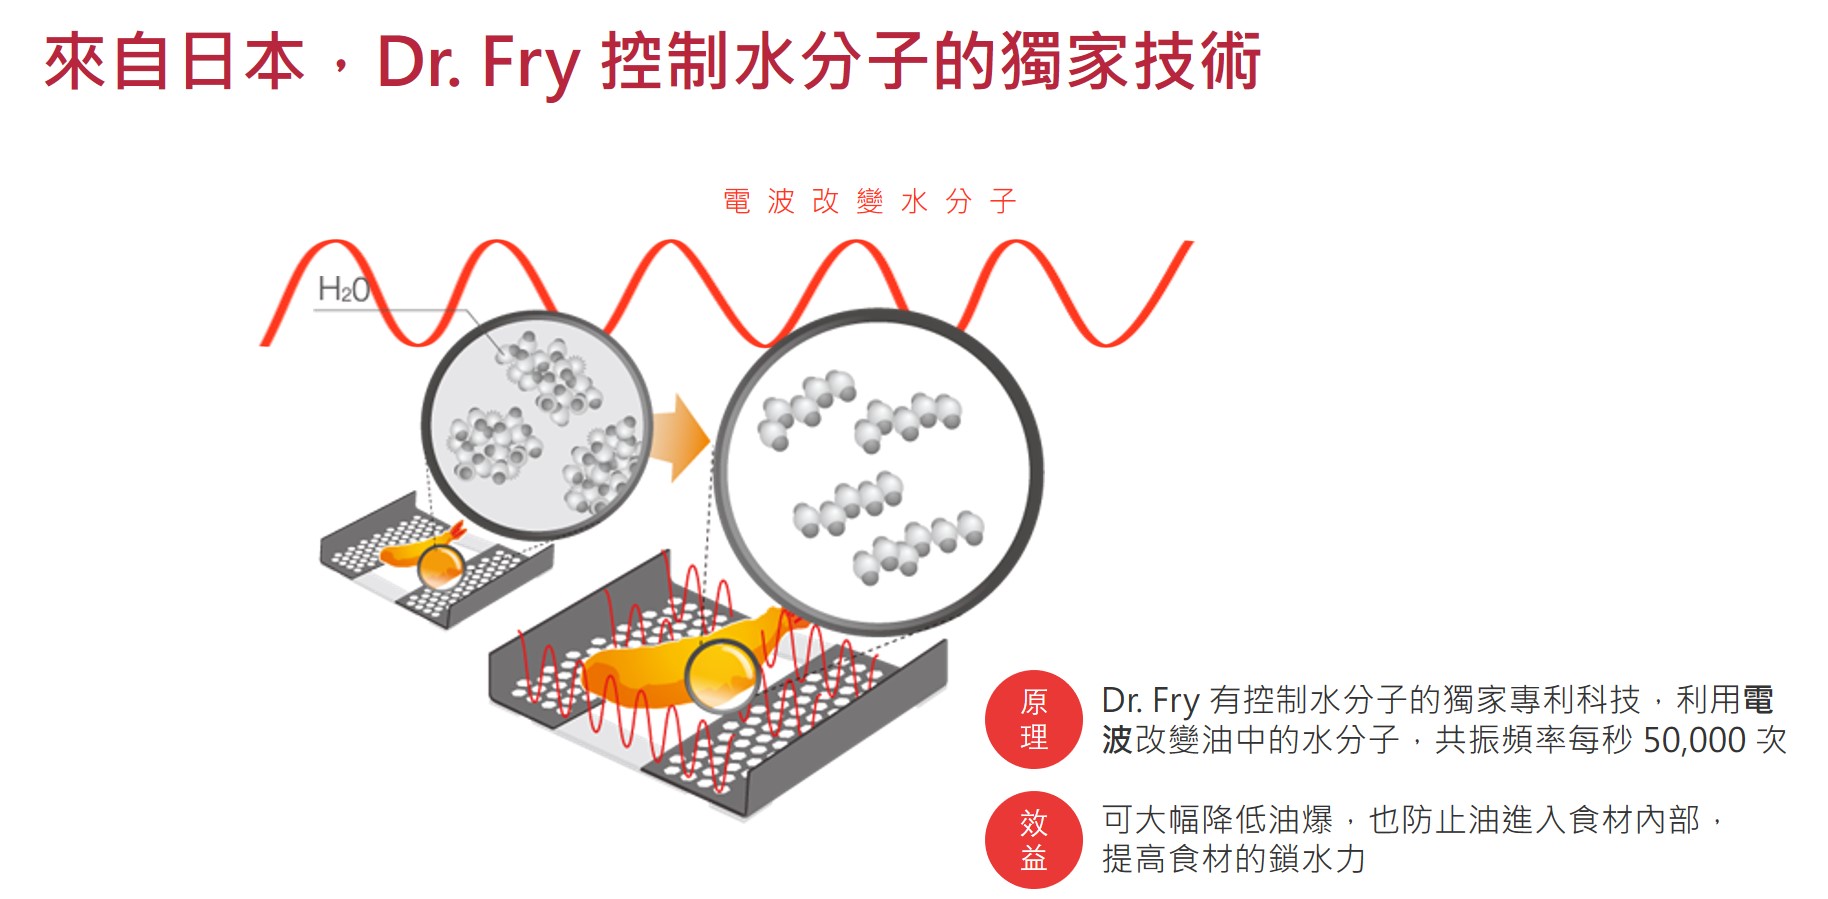 來自日本，Dr. Fry 控制水分子的獨家技術   原理 Dr. Fry 有控制水分子的獨家專利科技，利用電波改變油中的水分子，共振頻率每秒 50,000 次   效益   可大幅降低油爆，也防止油進入食材內部，提高食材的鎖水力  電波改變水分子